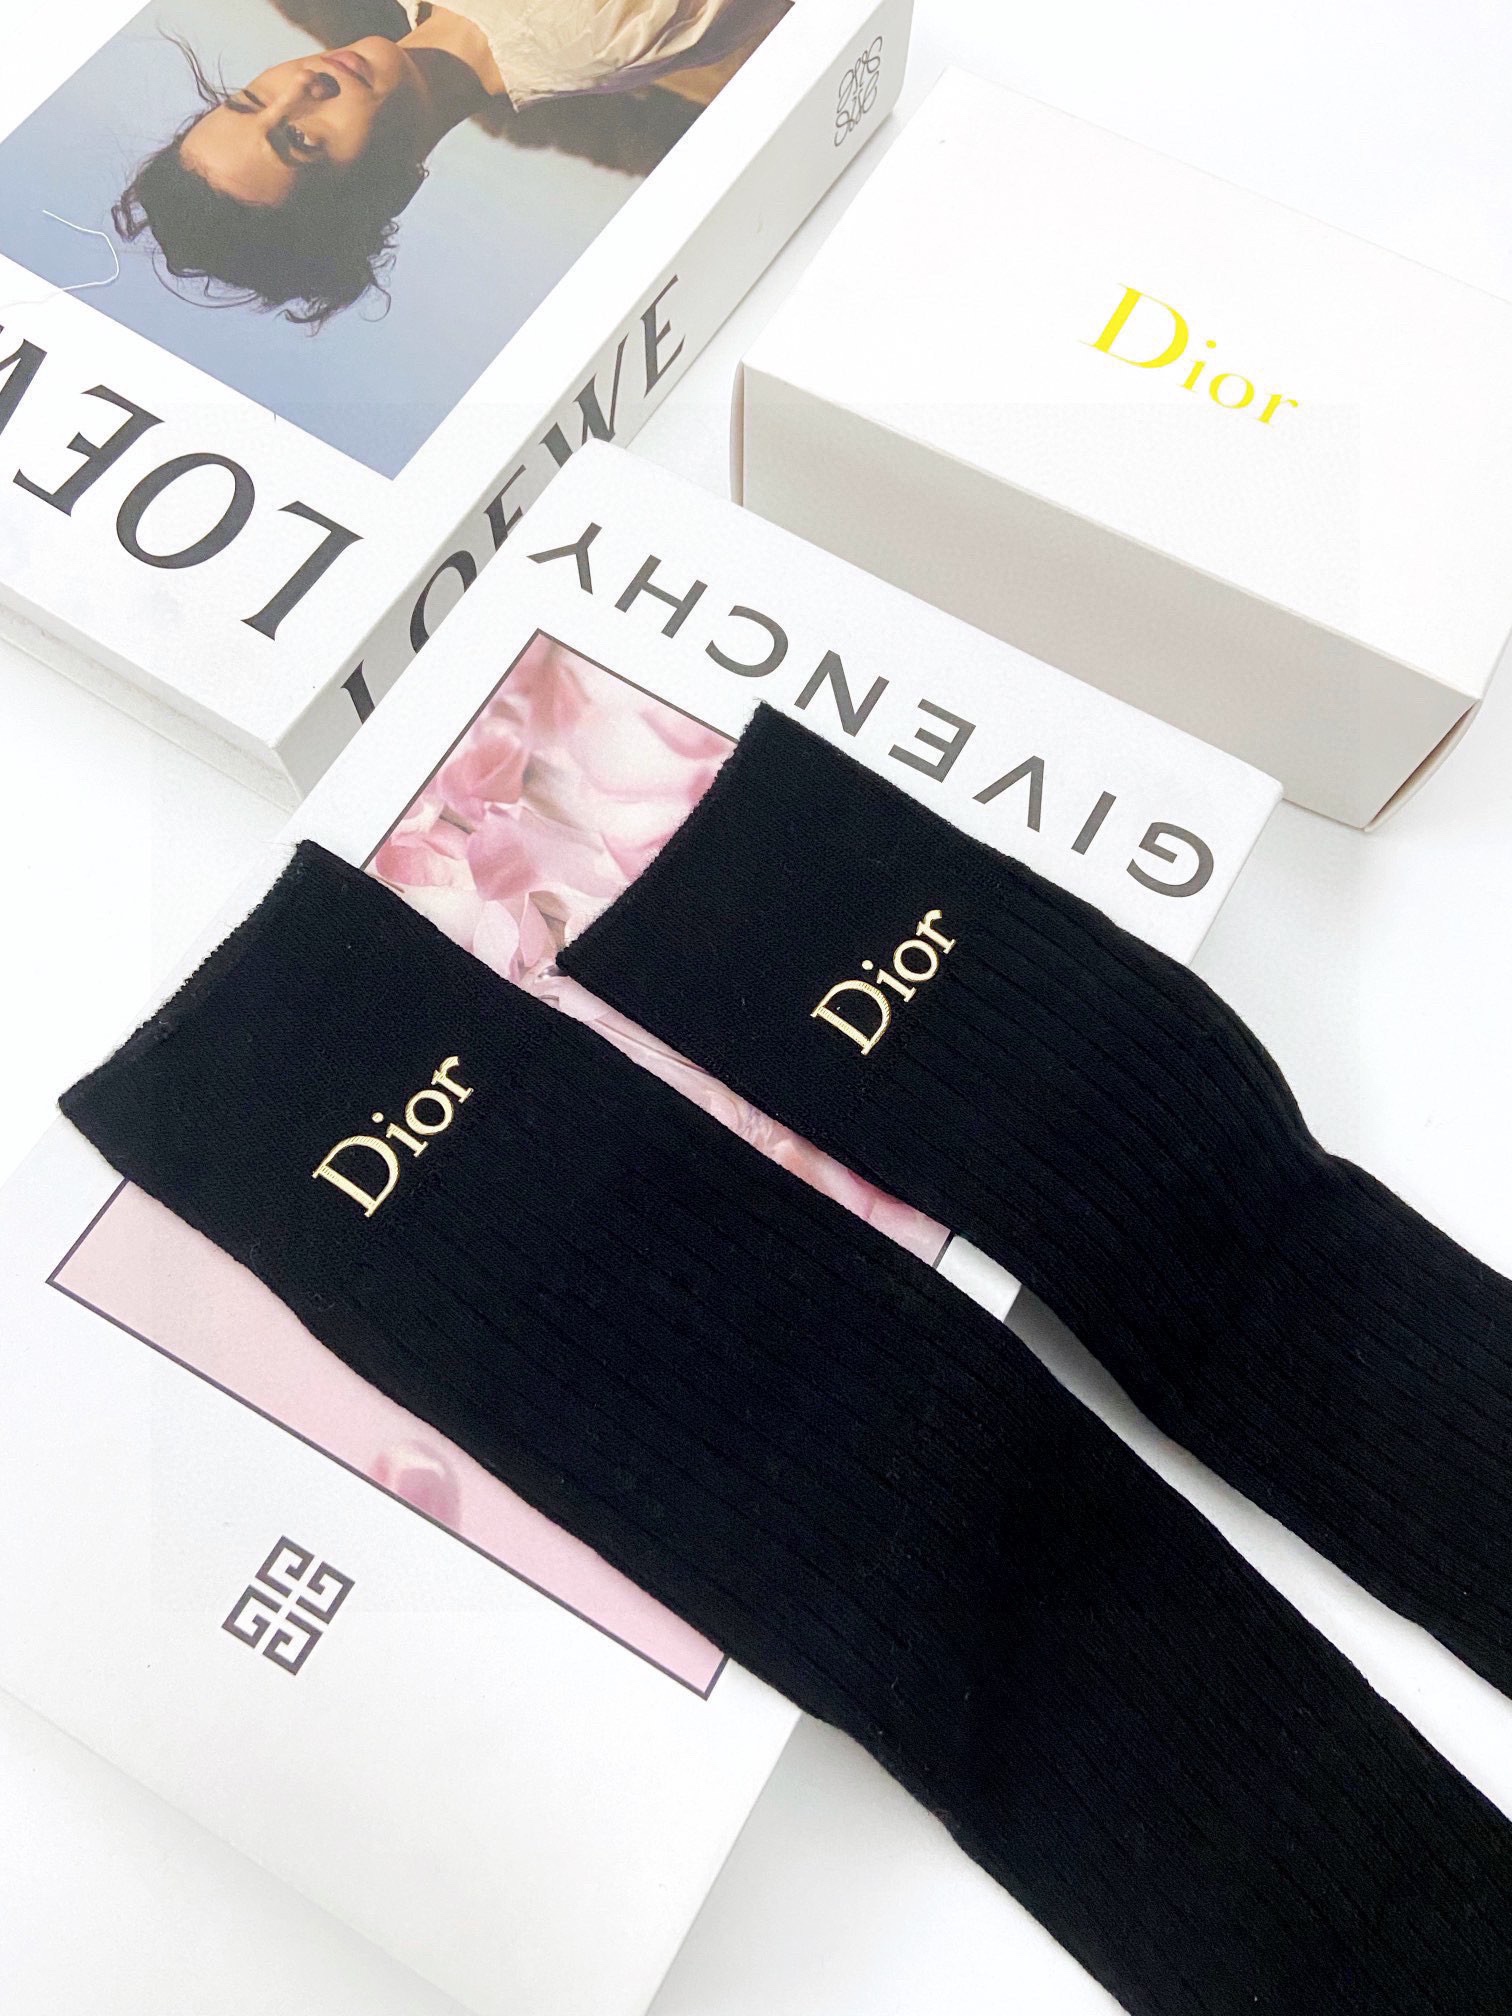 配包装一盒一双Dior迪奥爆款经典字母长筒袜小腿袜双针针织材质超完美结合款式经典专柜同步发售ins爆火小